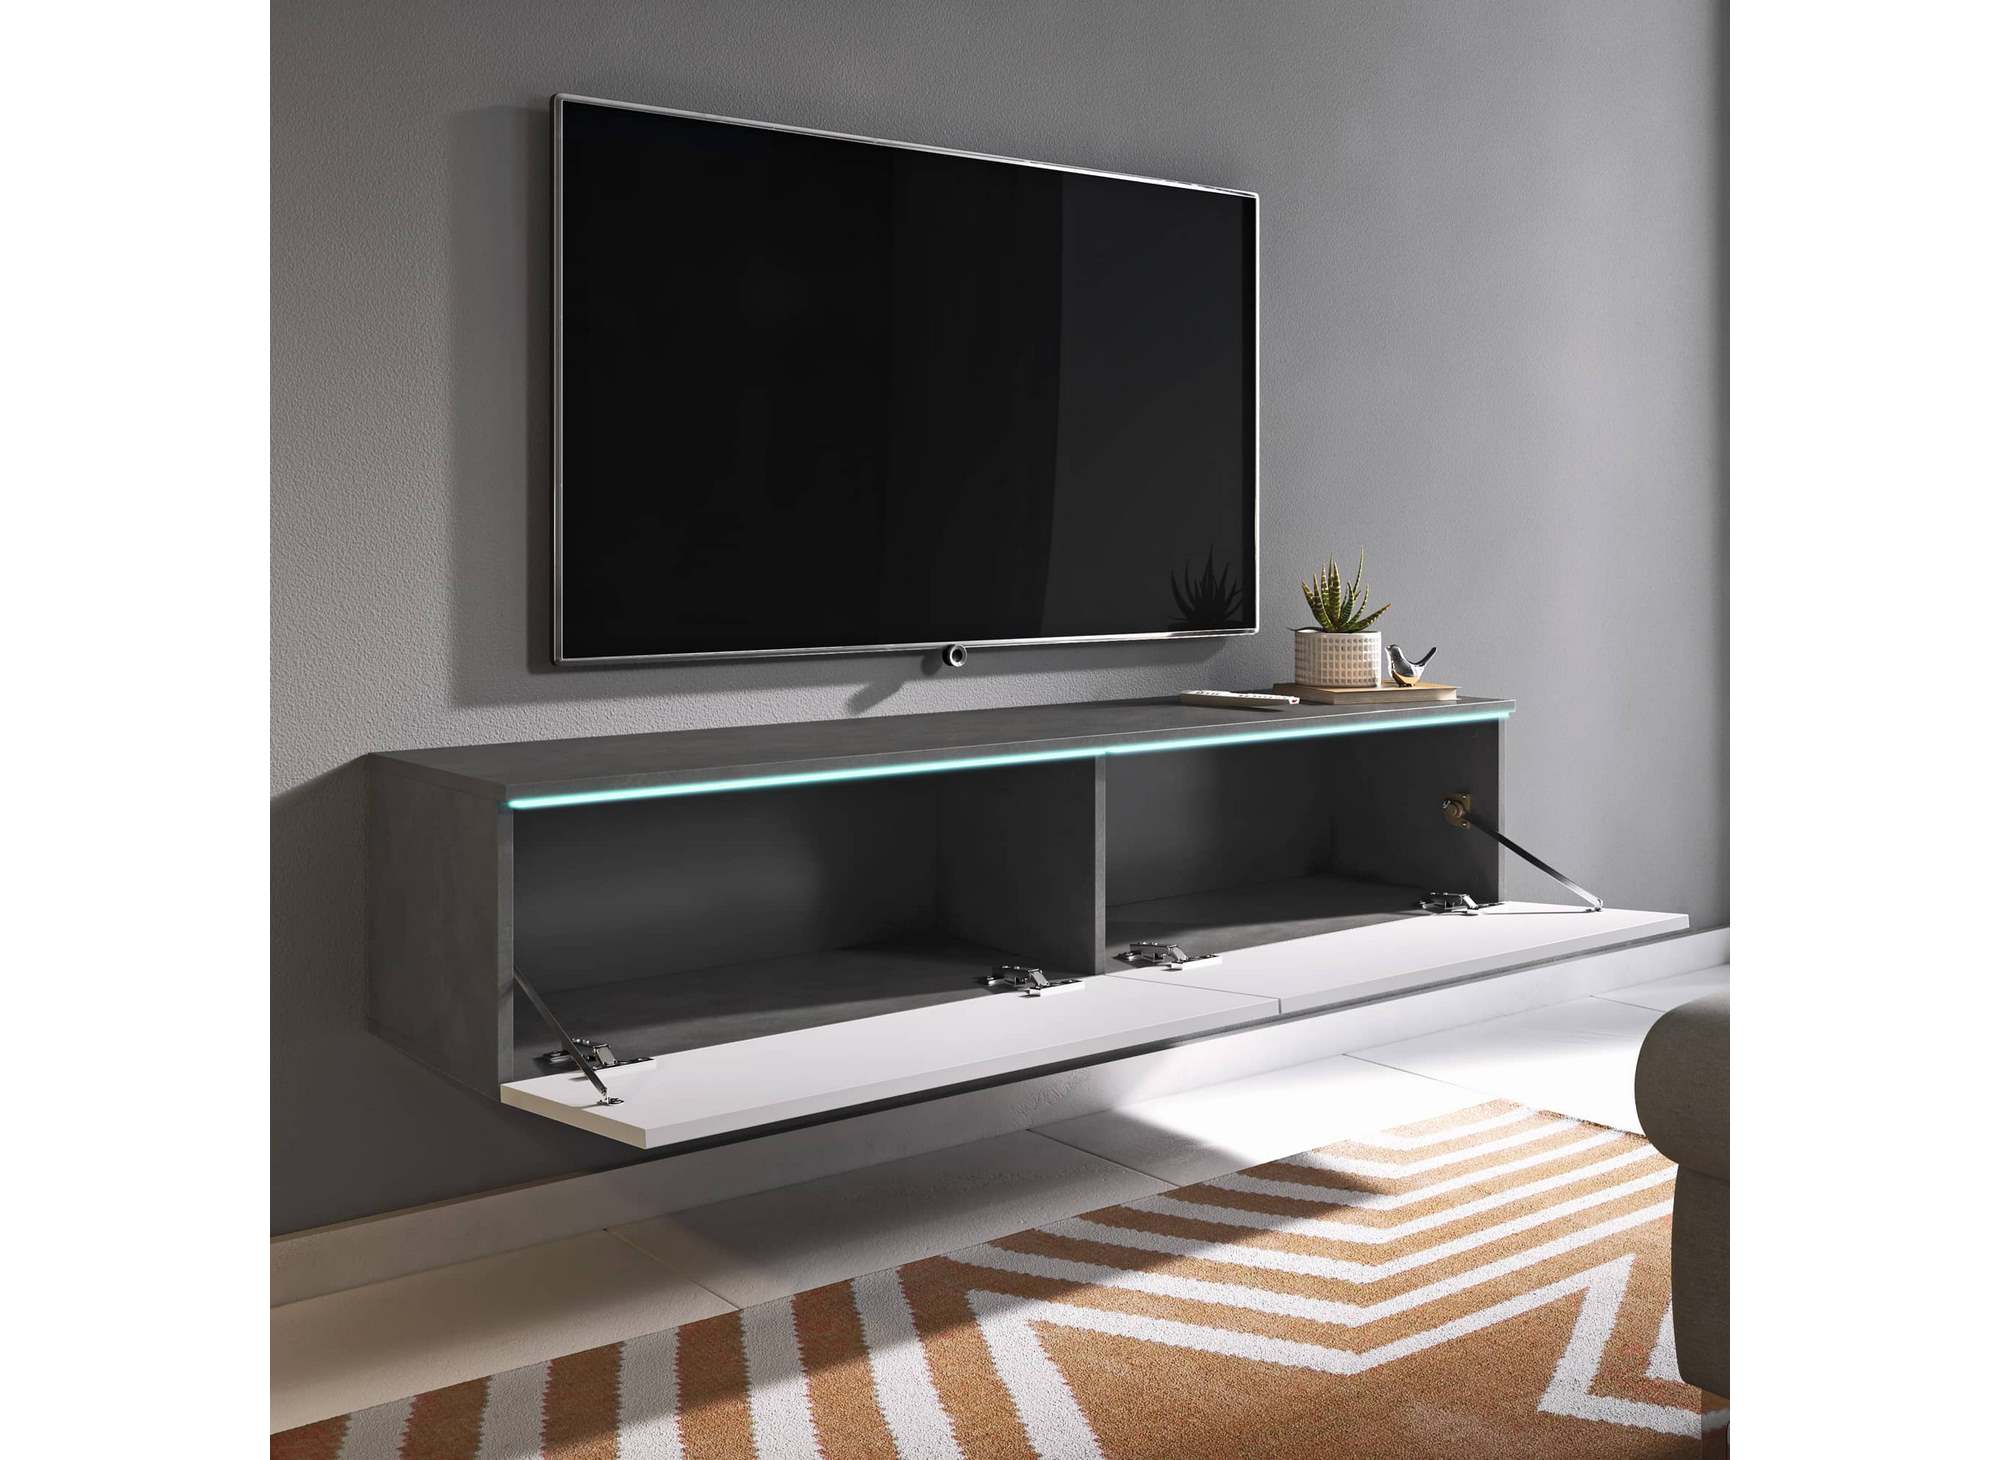 Meuble TV contemporain gris et blanc avec LED 2 portes MALORIE - 180 cm